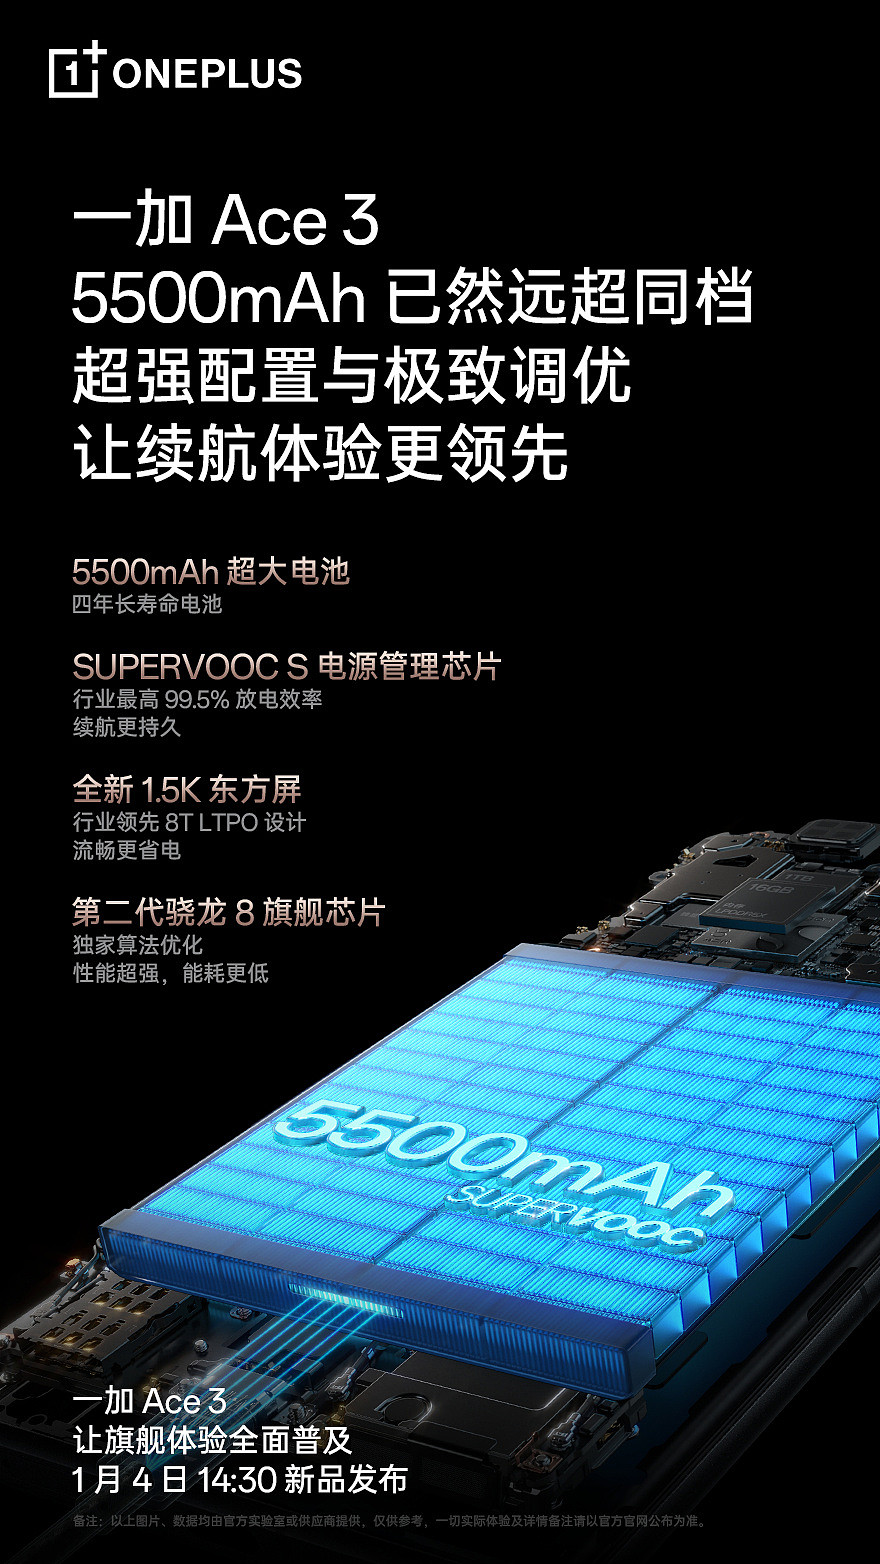 一加 Ace 3 手机号称“4 年续航无忧”：配备 5500mAh 长寿命电池、搭载 SUPERVOOC S 电源管理芯片 - 2